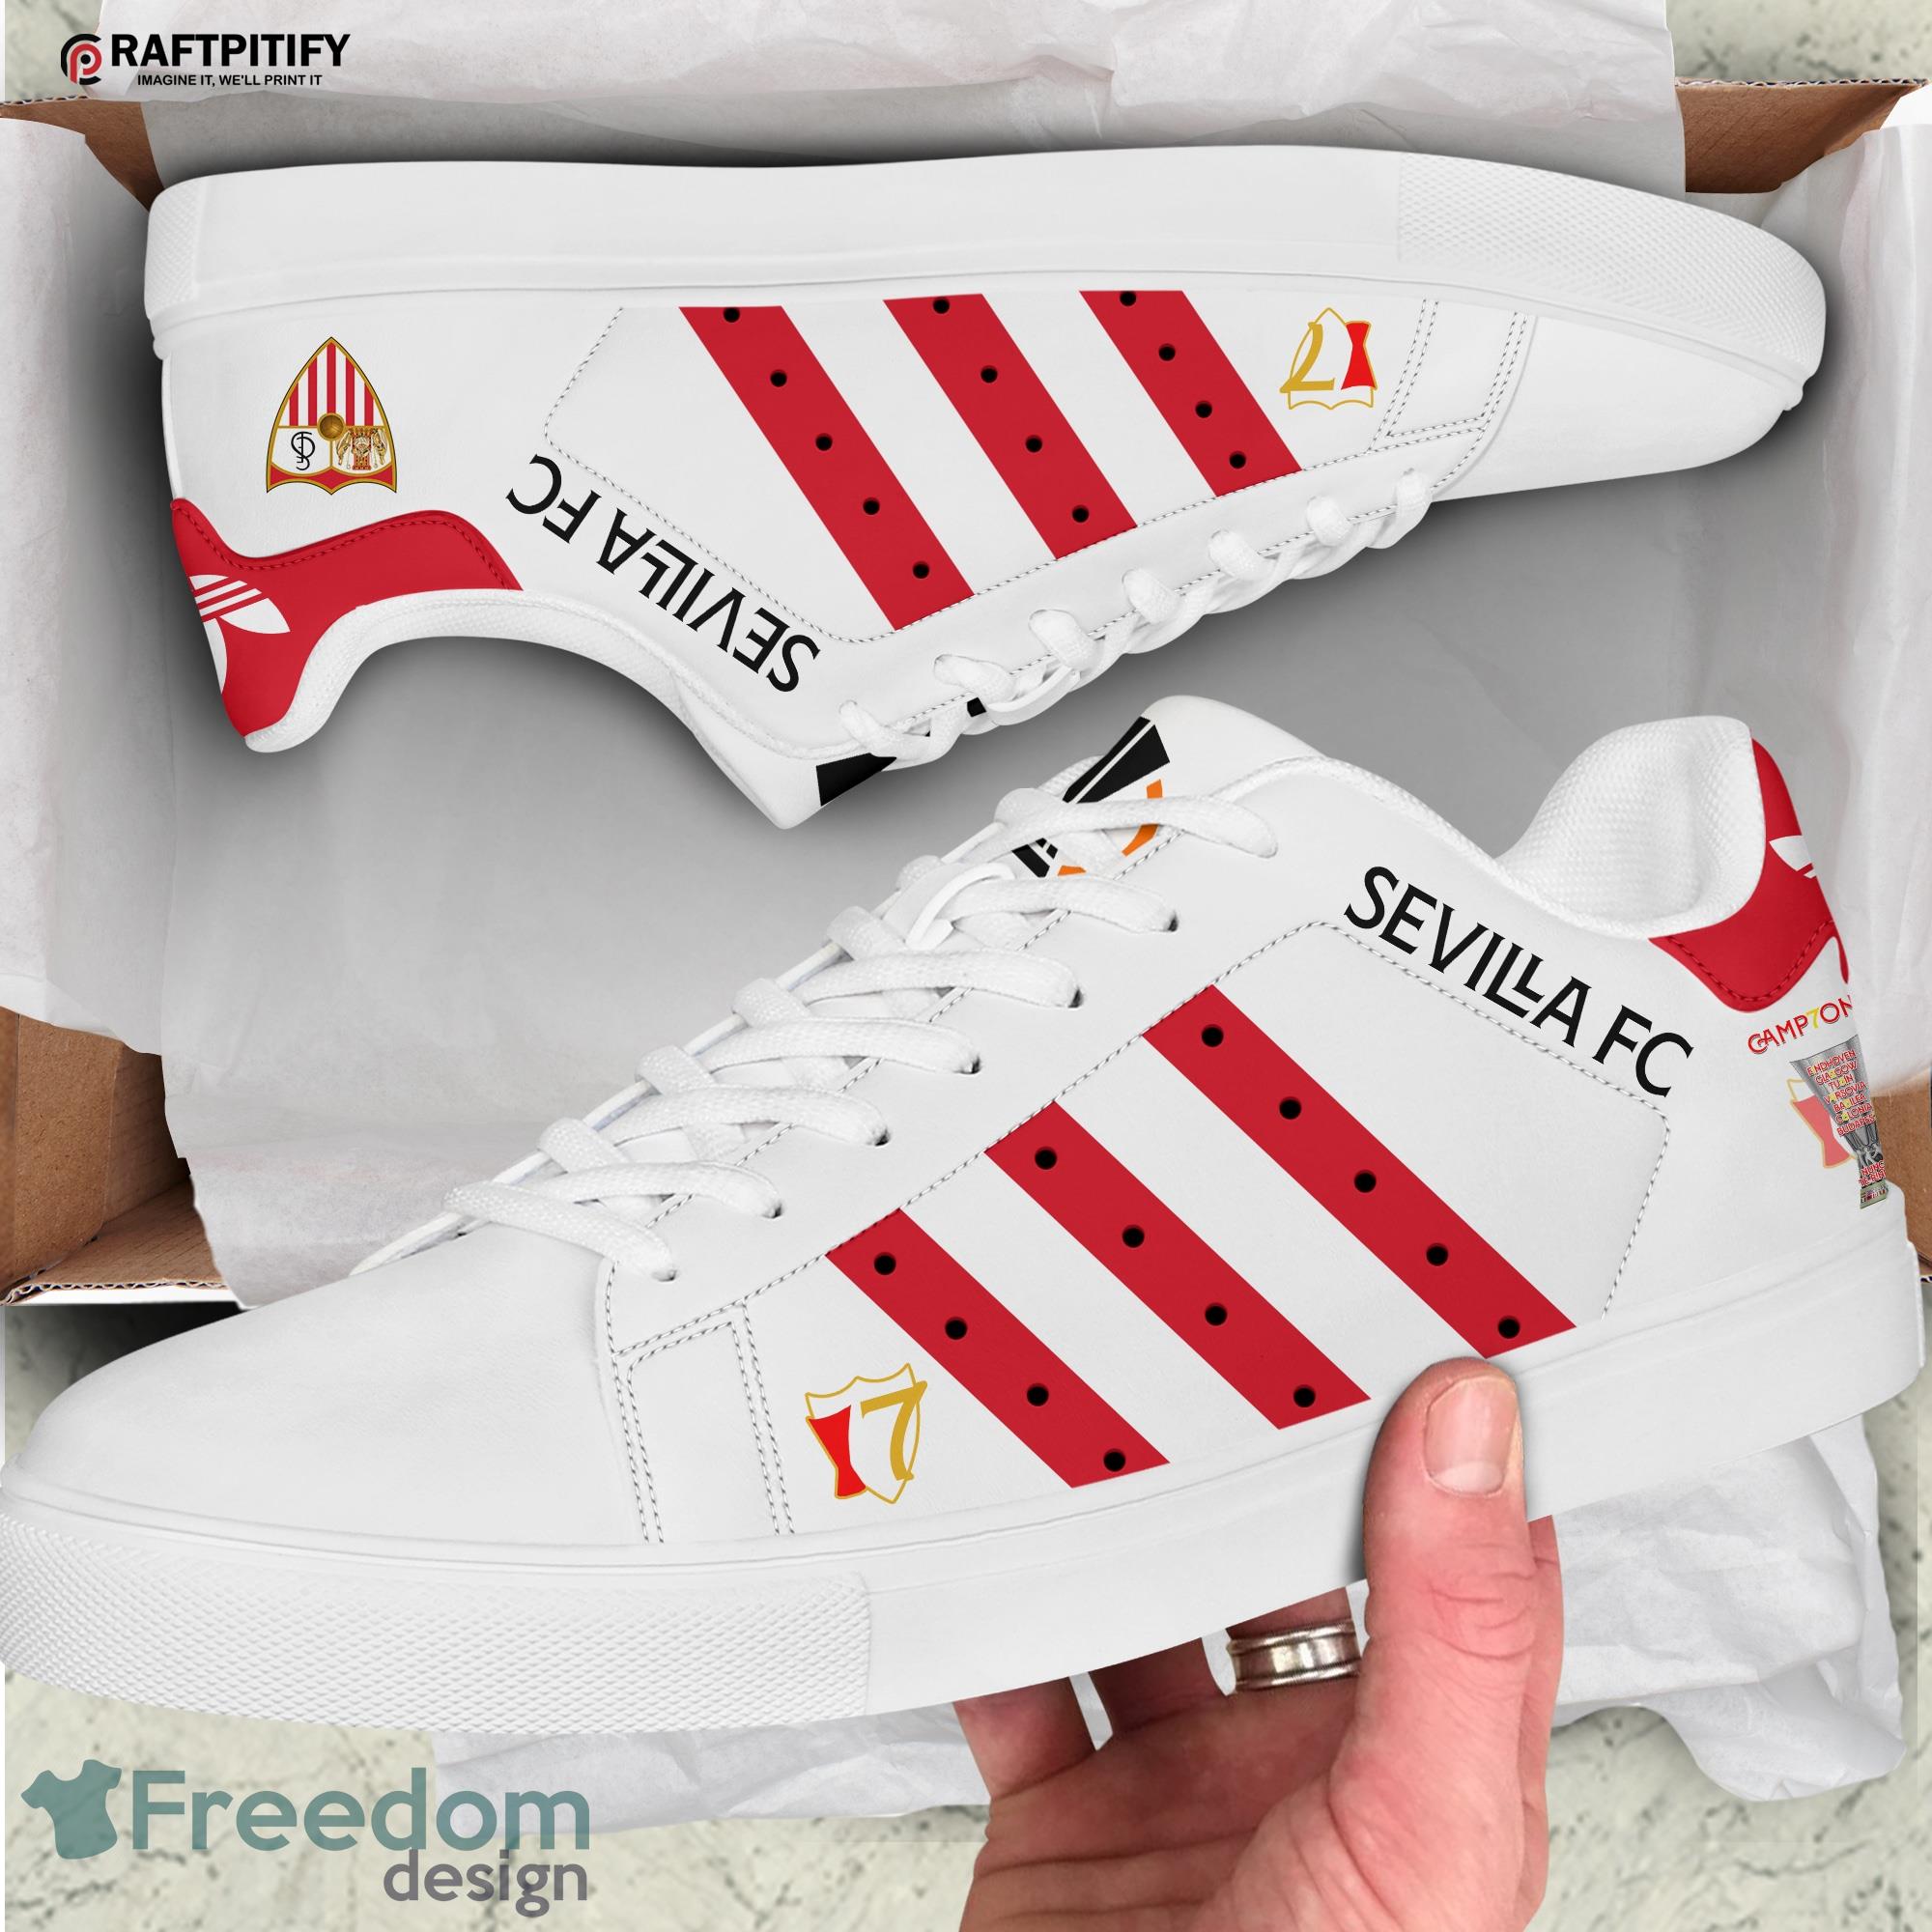 Gå vandreture Portræt Garderobe Sevilla FC 3 Stan Smith Shoes Skate - Freedomdesign